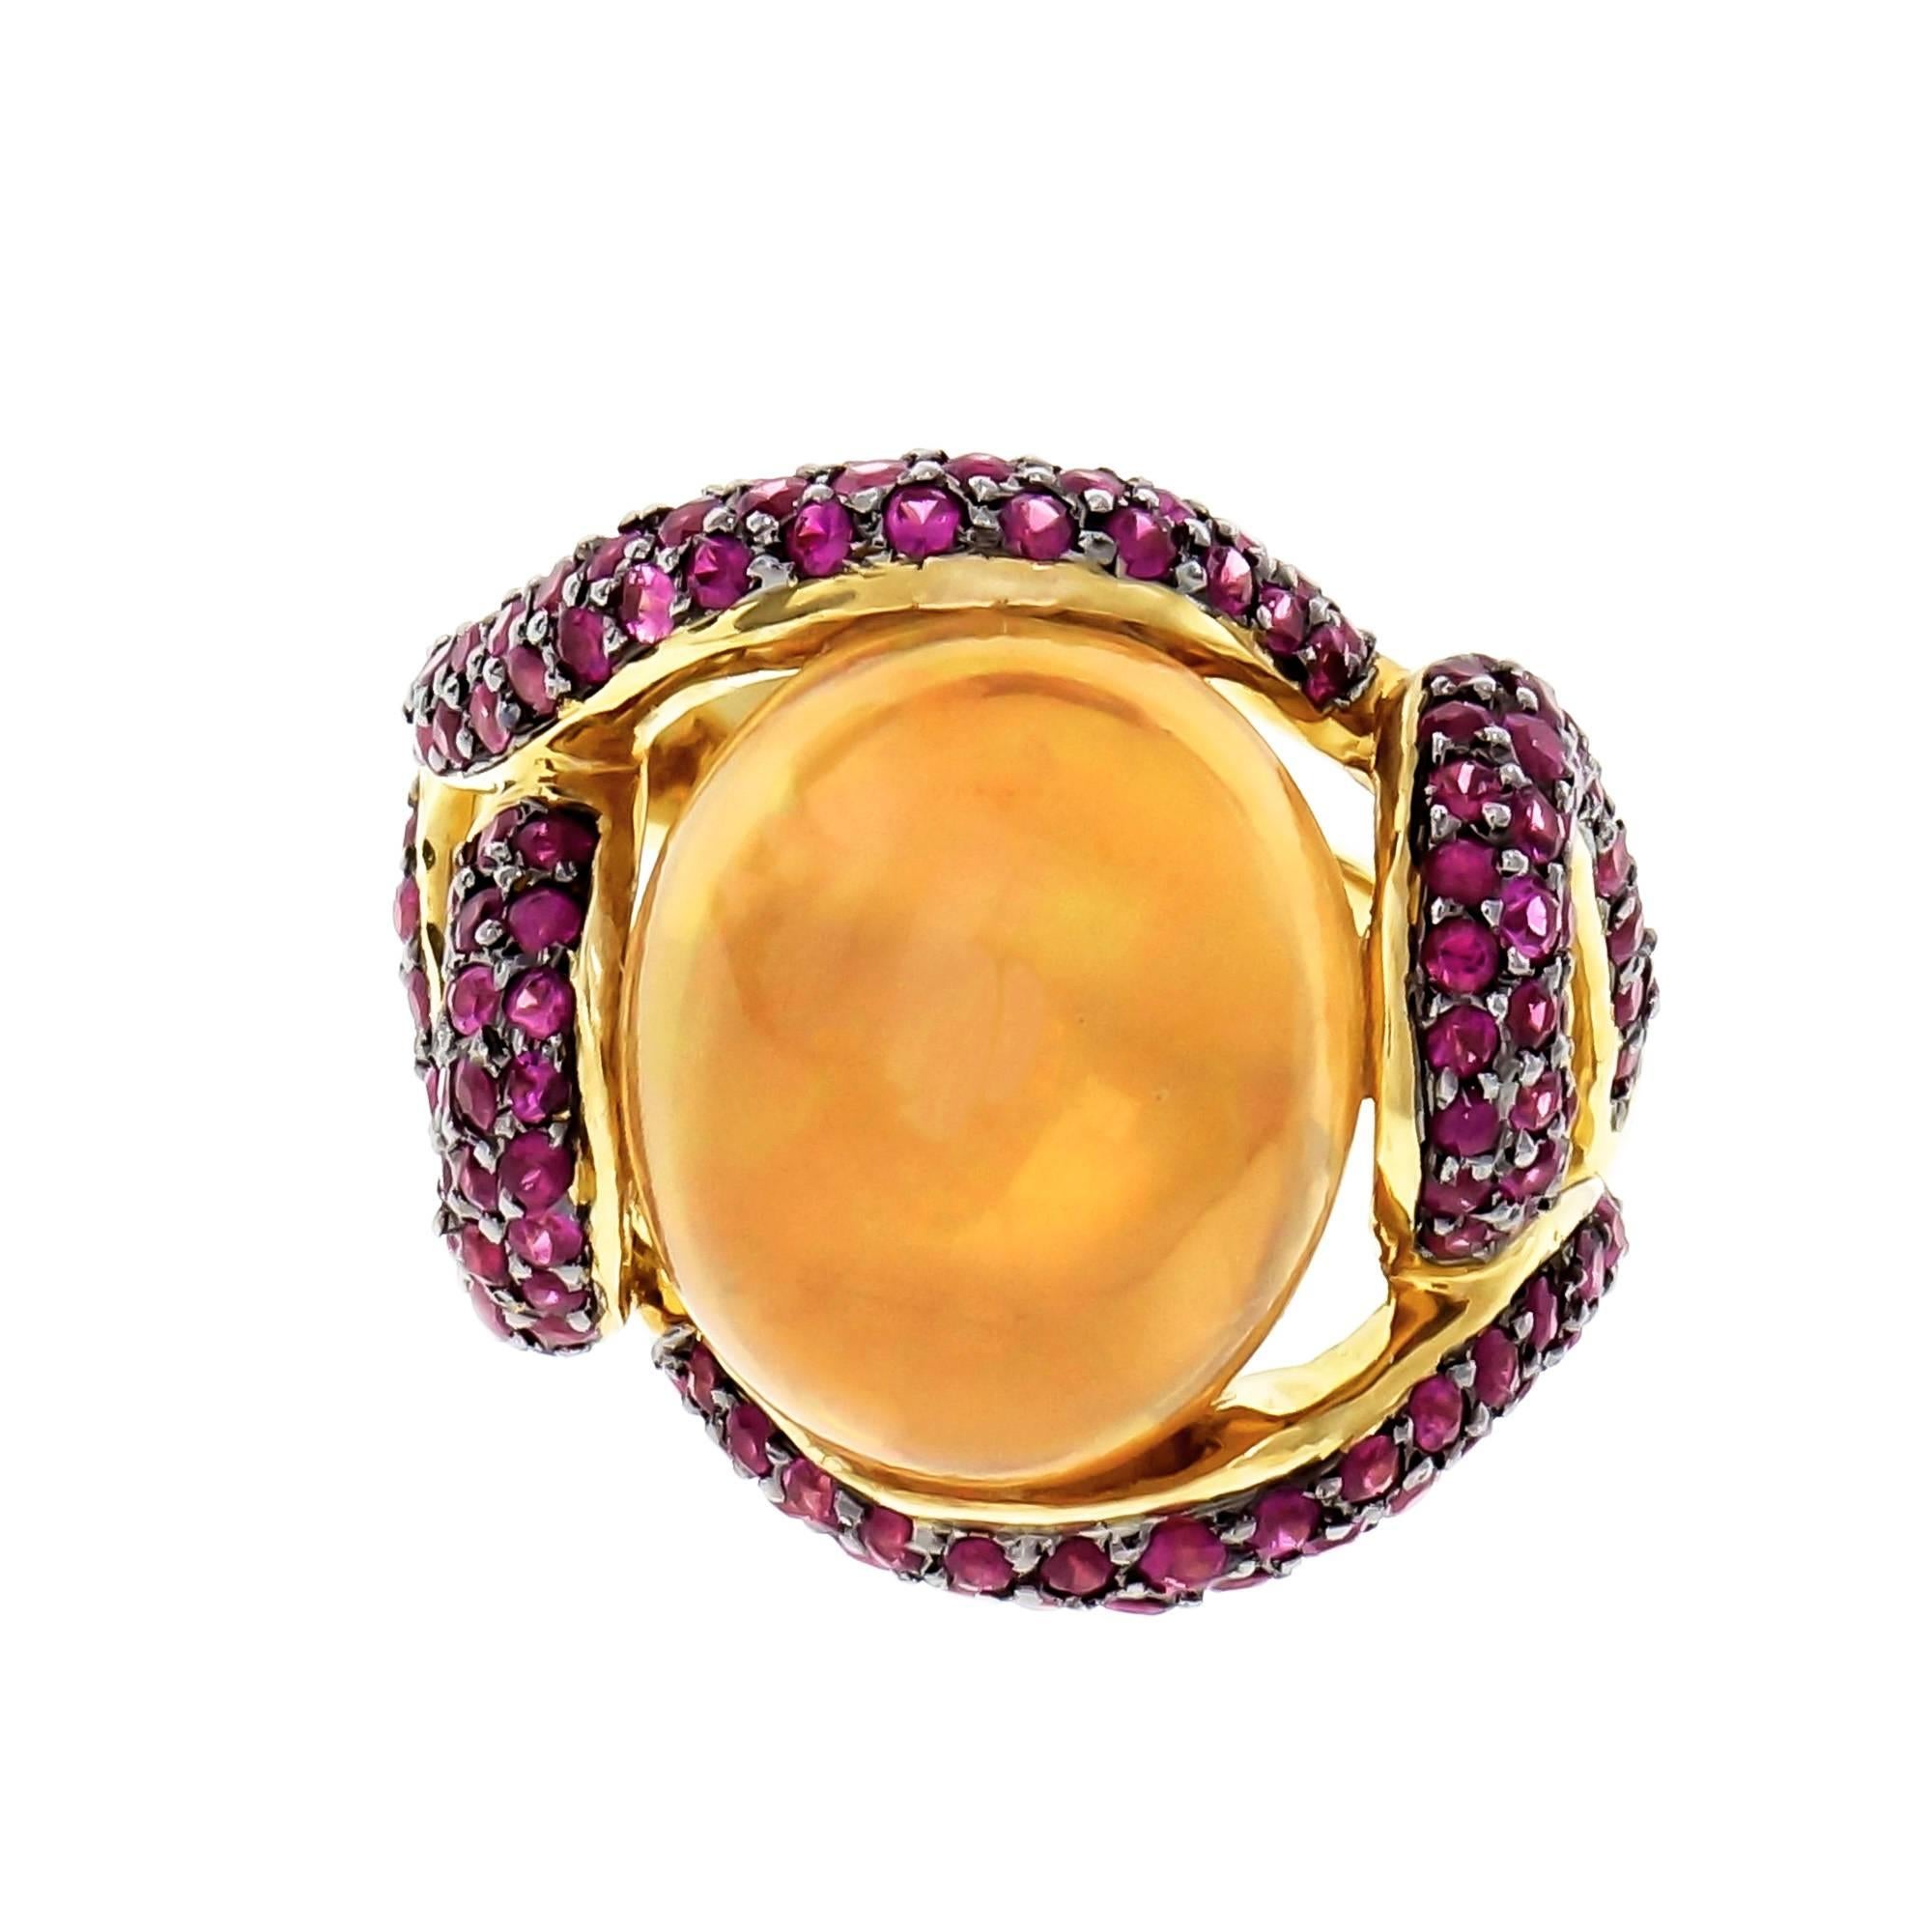 Designer Dyach Opal und Rubin-Cocktail-Ring. 18k Gelbgold freie Form Wirbel Ring mit einem natürlichen mexikanischen feinen Opal ca. Gesamtgewicht 5,00cts in einem goldenen orange Farbe mit roten, grünen und blauen Blitz mit Pavé mit von leuchtend